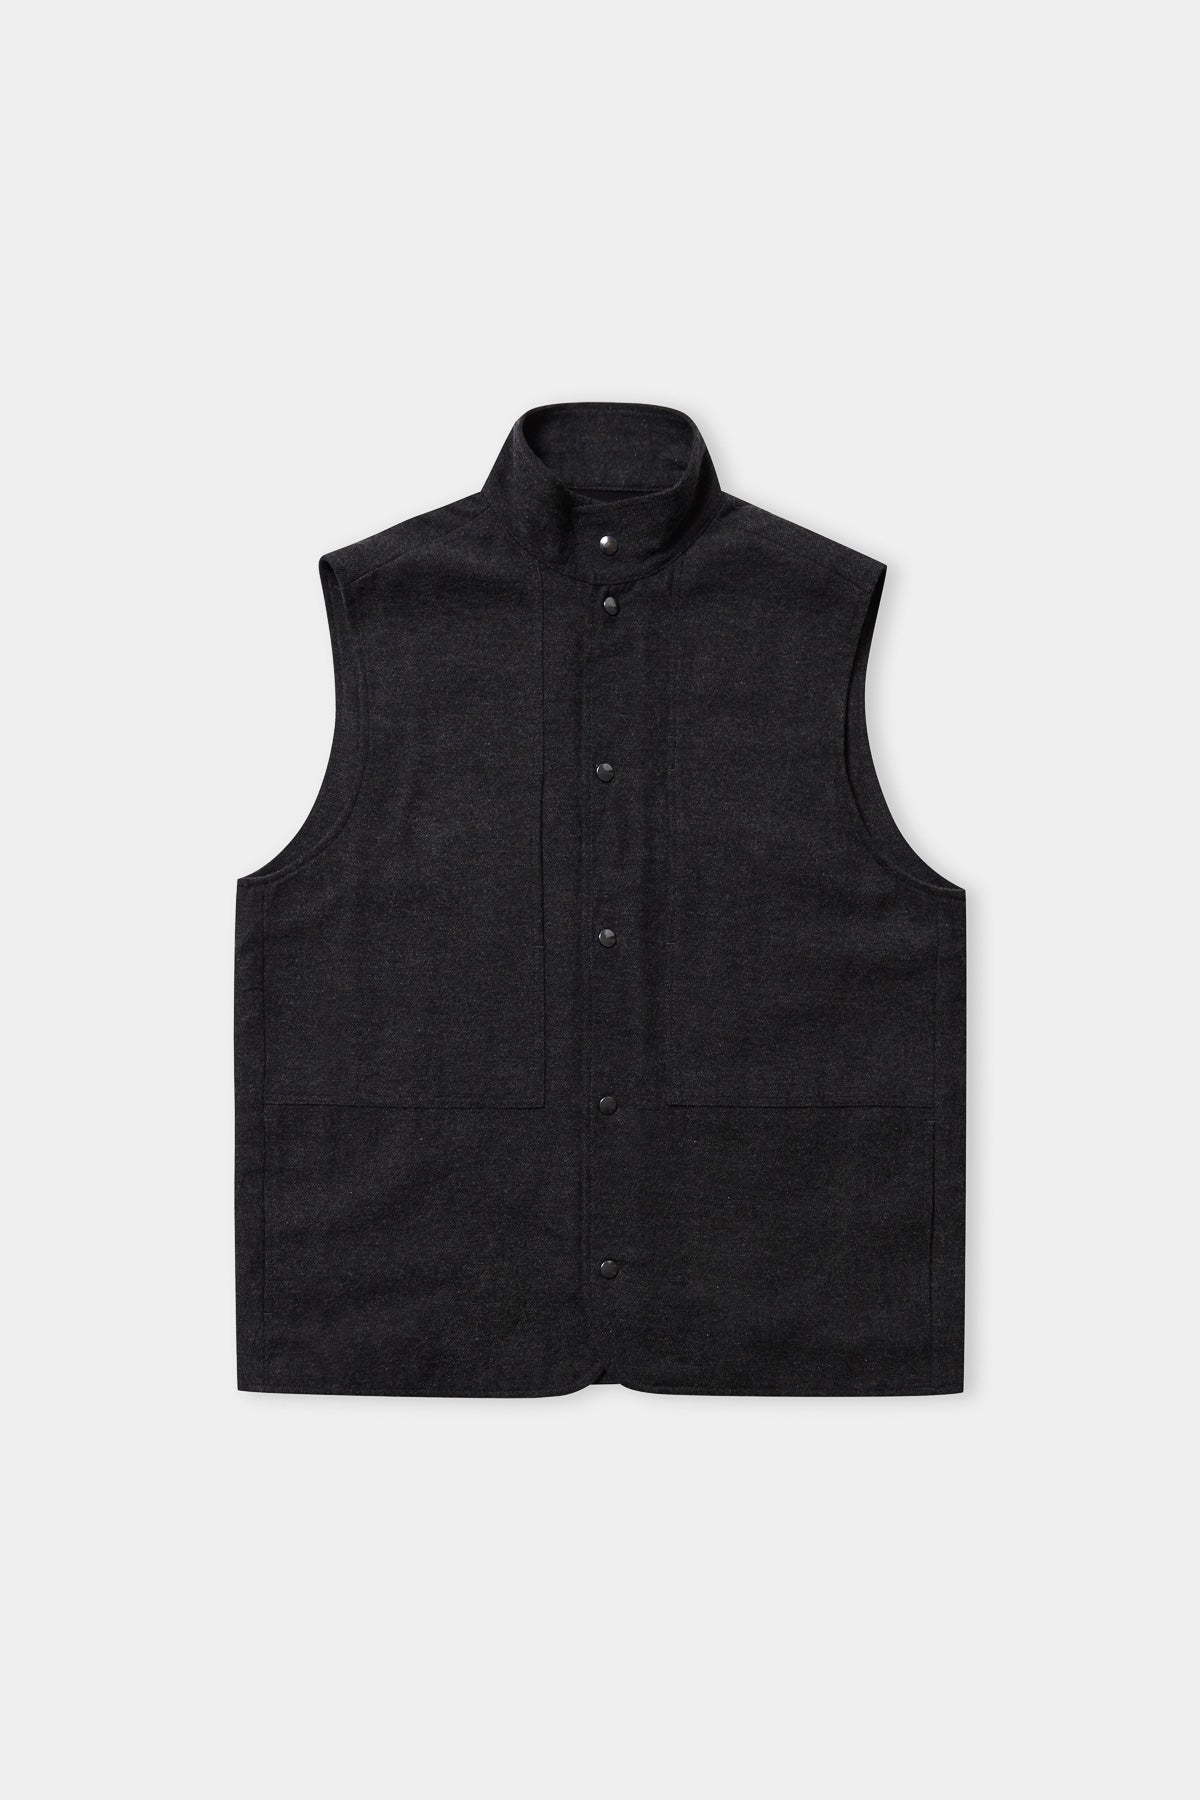 WENDEL vest eco coal flannel